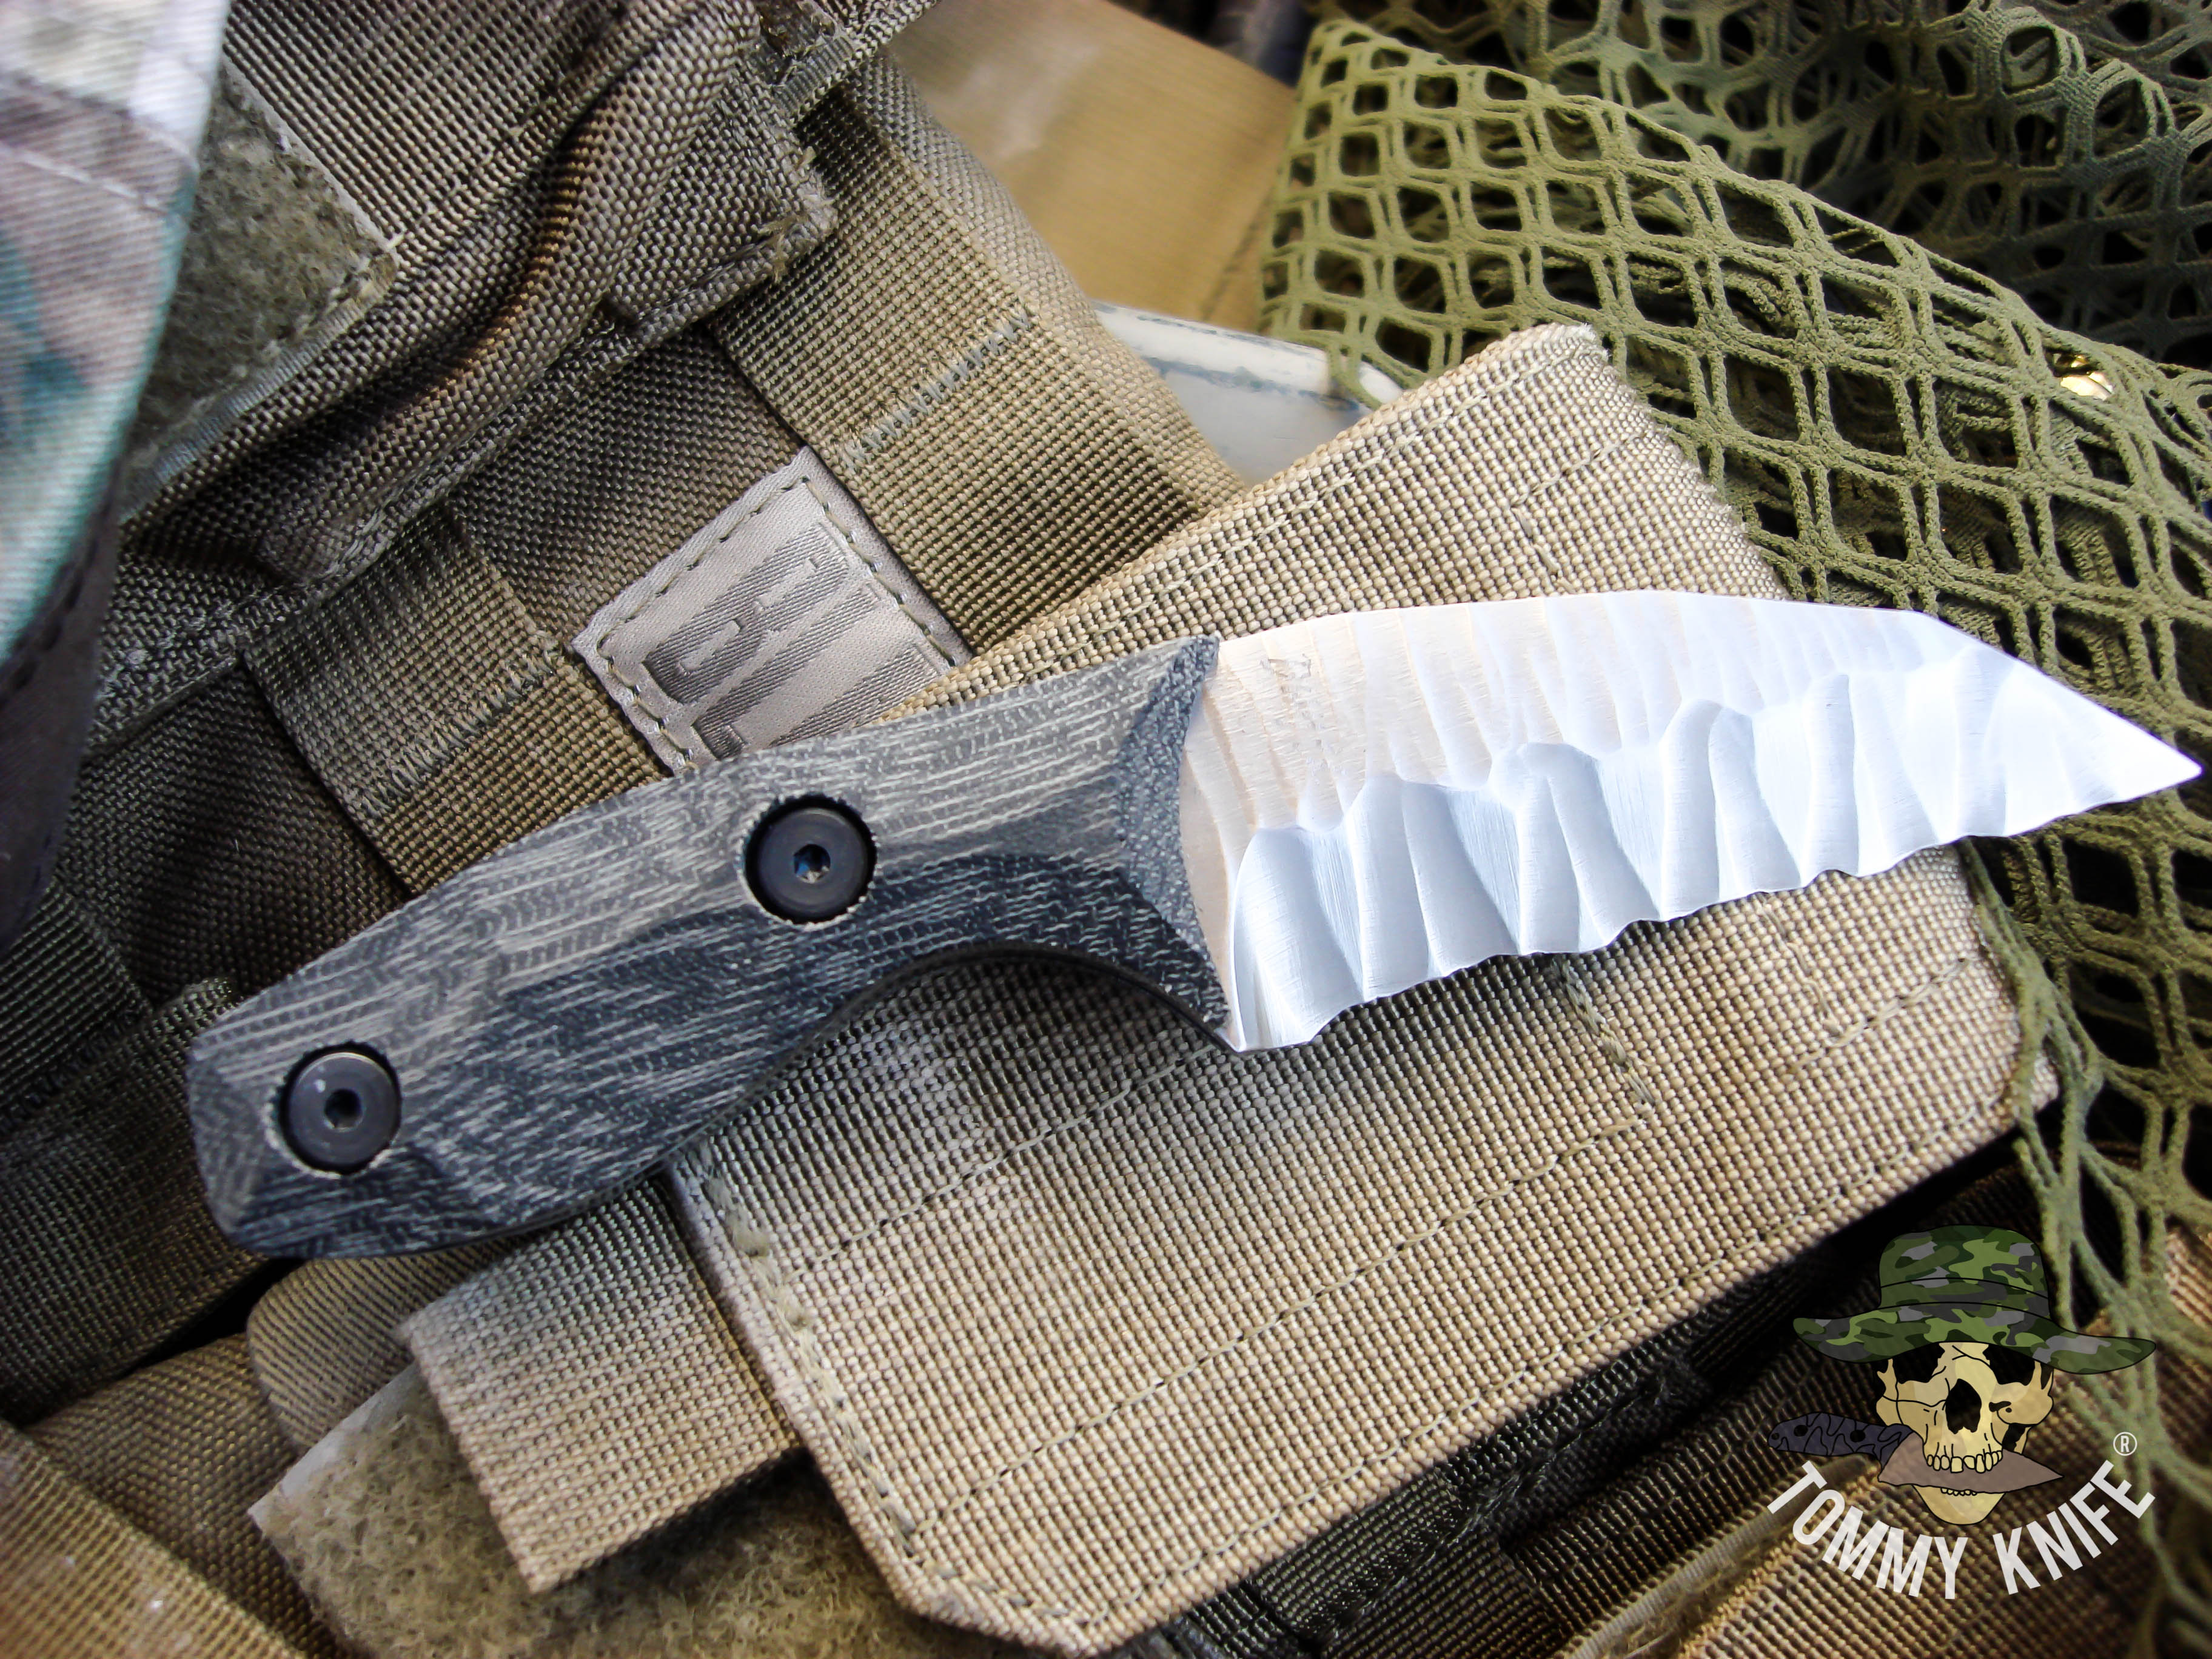 Tommy Knife® Juliett - Sculpted Blade with Micarta Caveman Grip